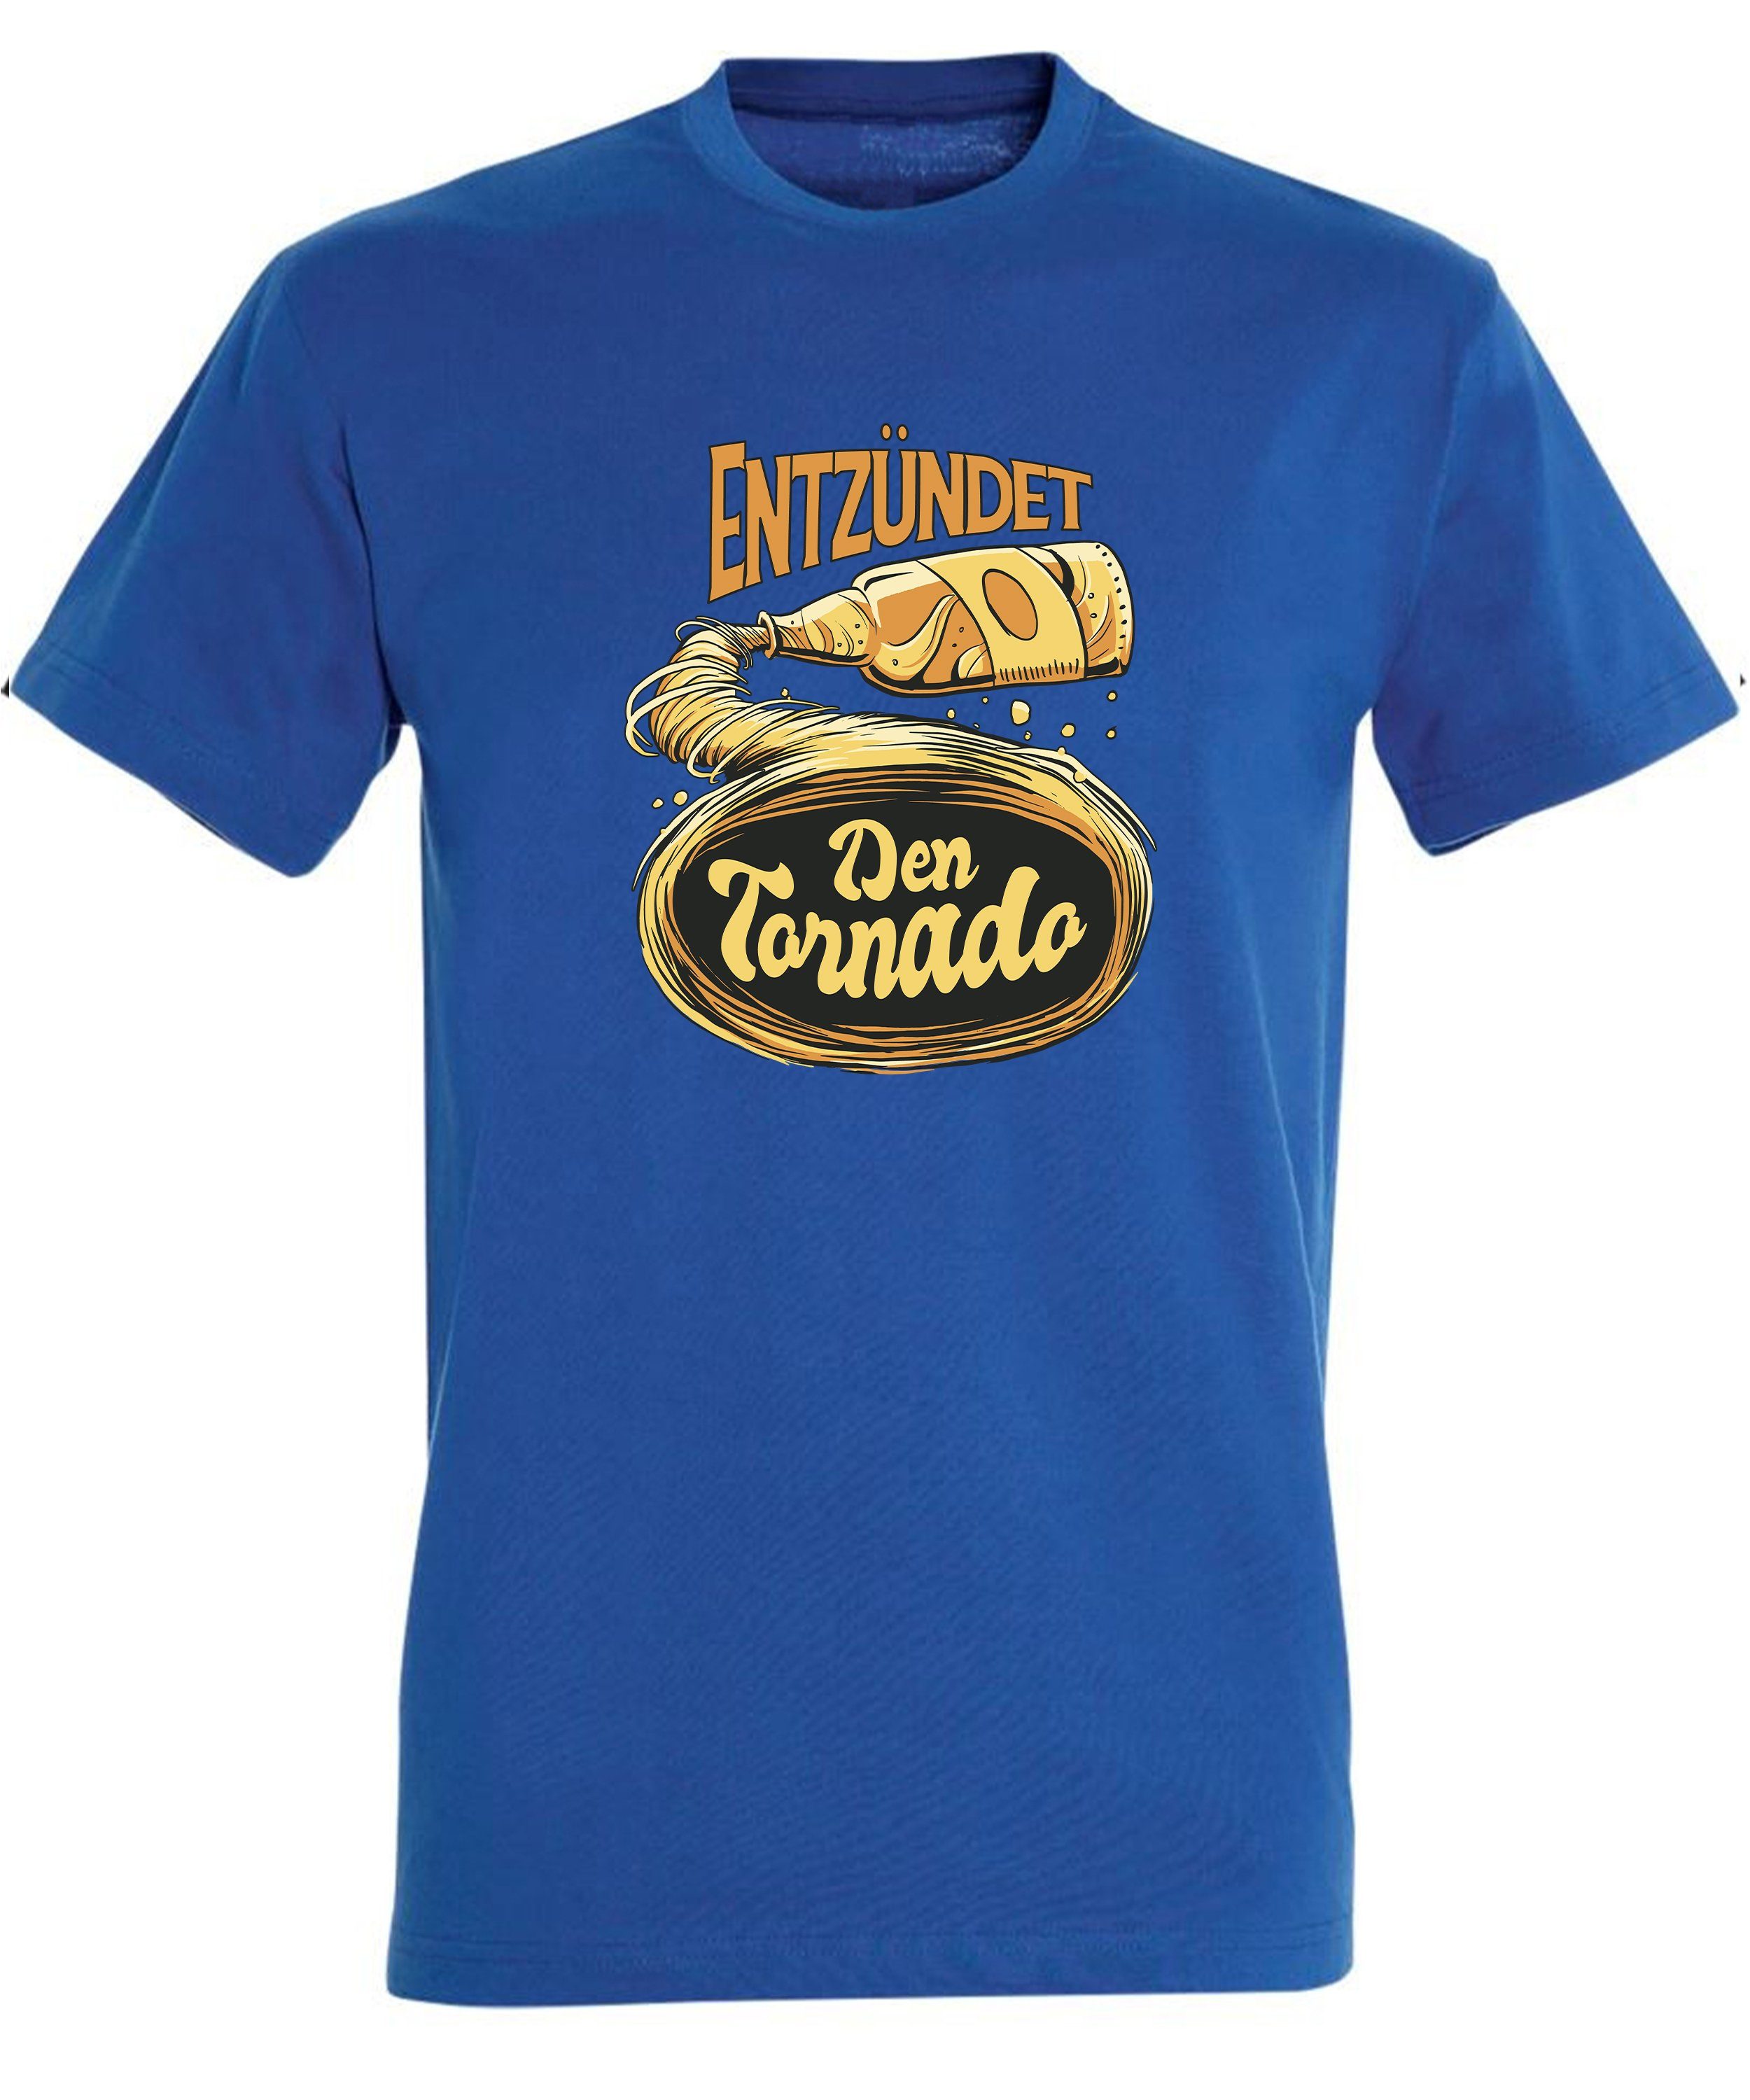 MyDesign24 T-Shirt Herren Fun Tornado - Oktoberfest Shirt Trinkshirt Entzündet Fit, Regular Aufdruck Baumwollshirt Print blau i302 mit royal den